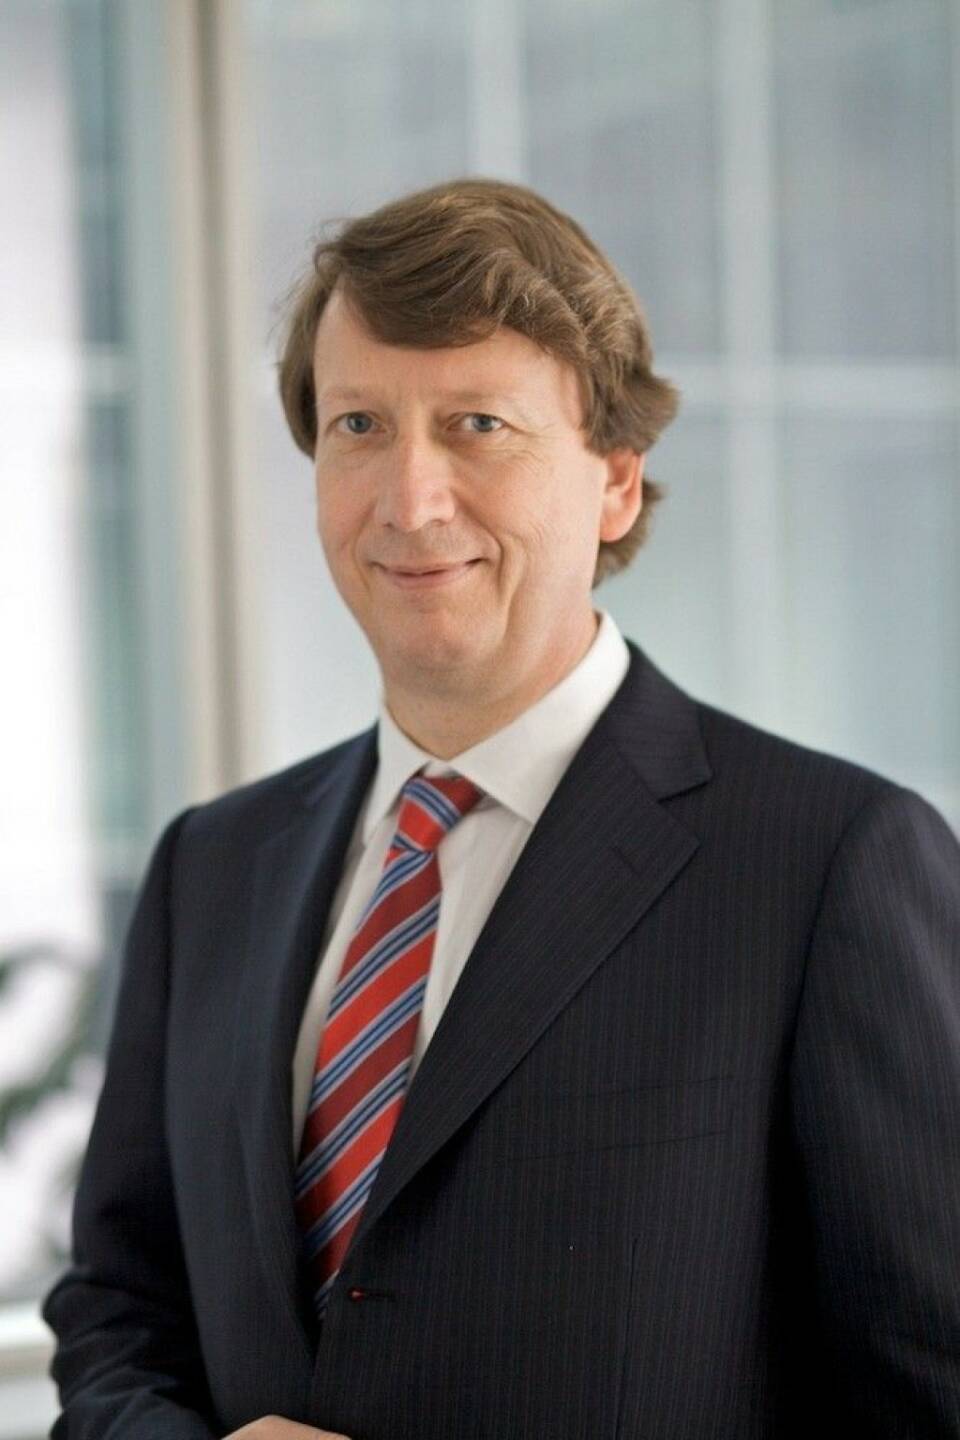 Wolfgang Schaefer, Mitglied des Vorstands der Continental AG. Verantwortlich fuer Finanzen, Controlling, Compliance, Recht und IT